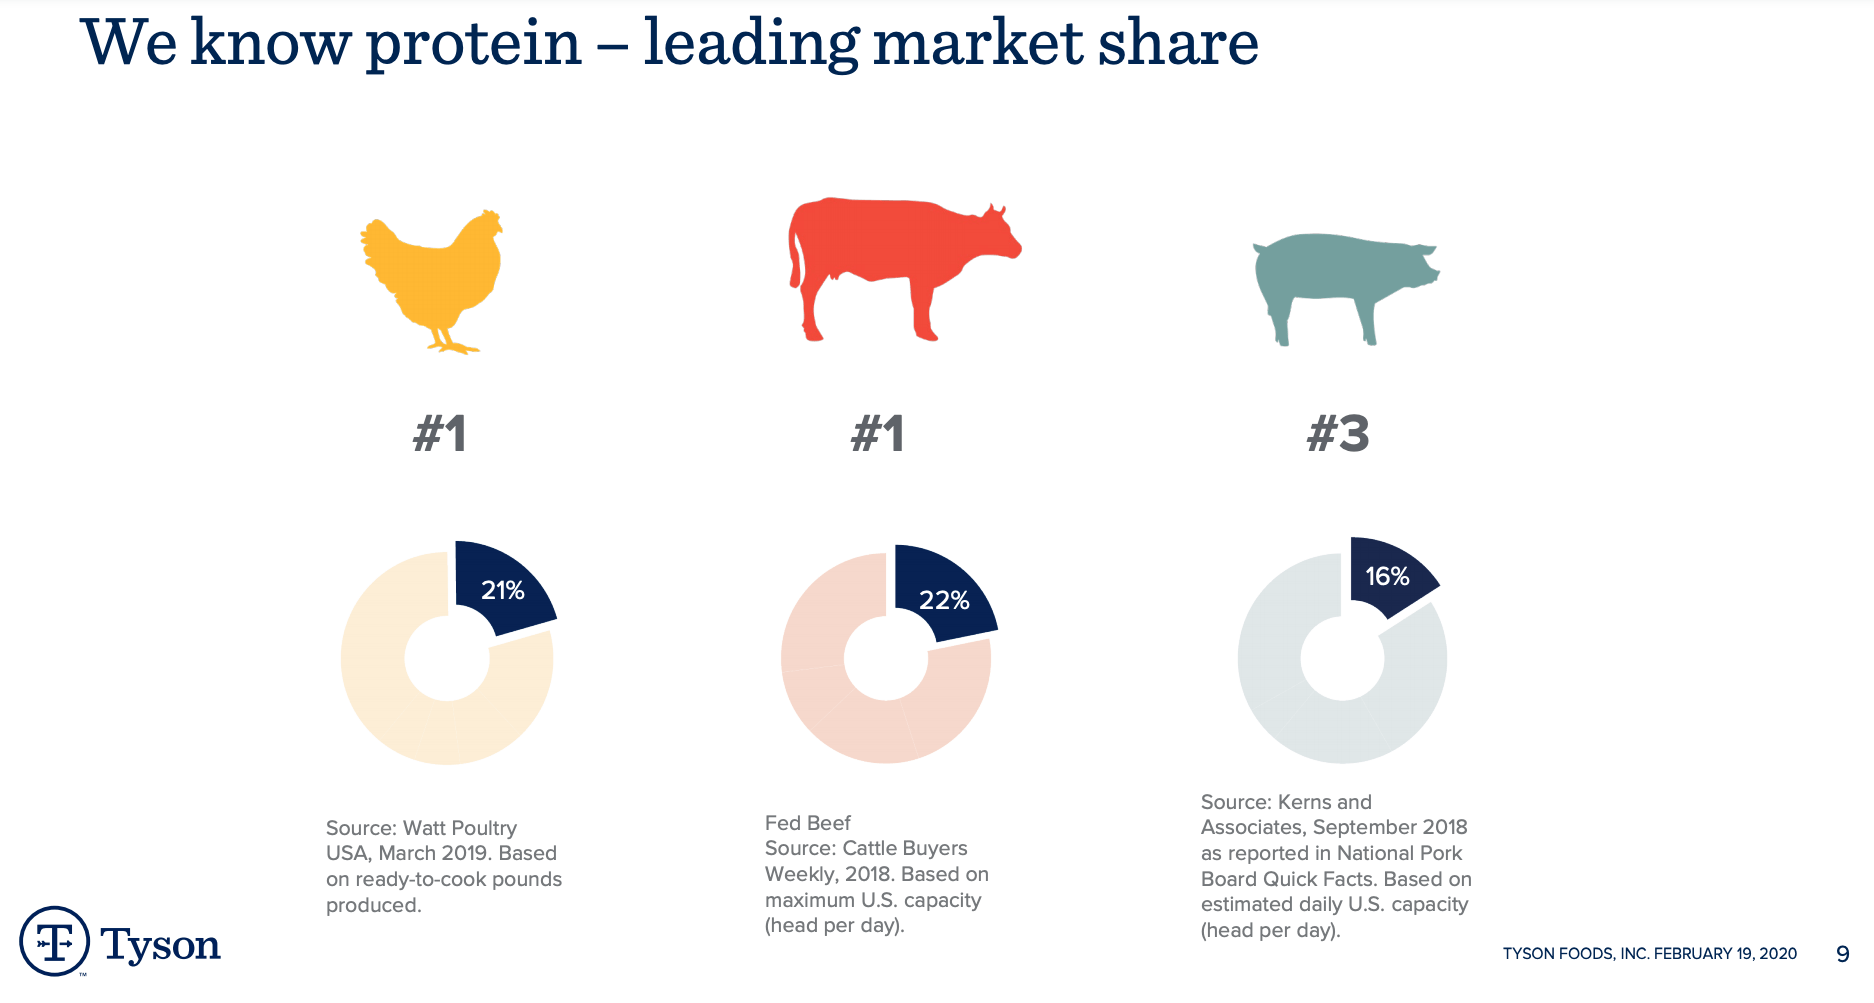 Tyson Foods market share